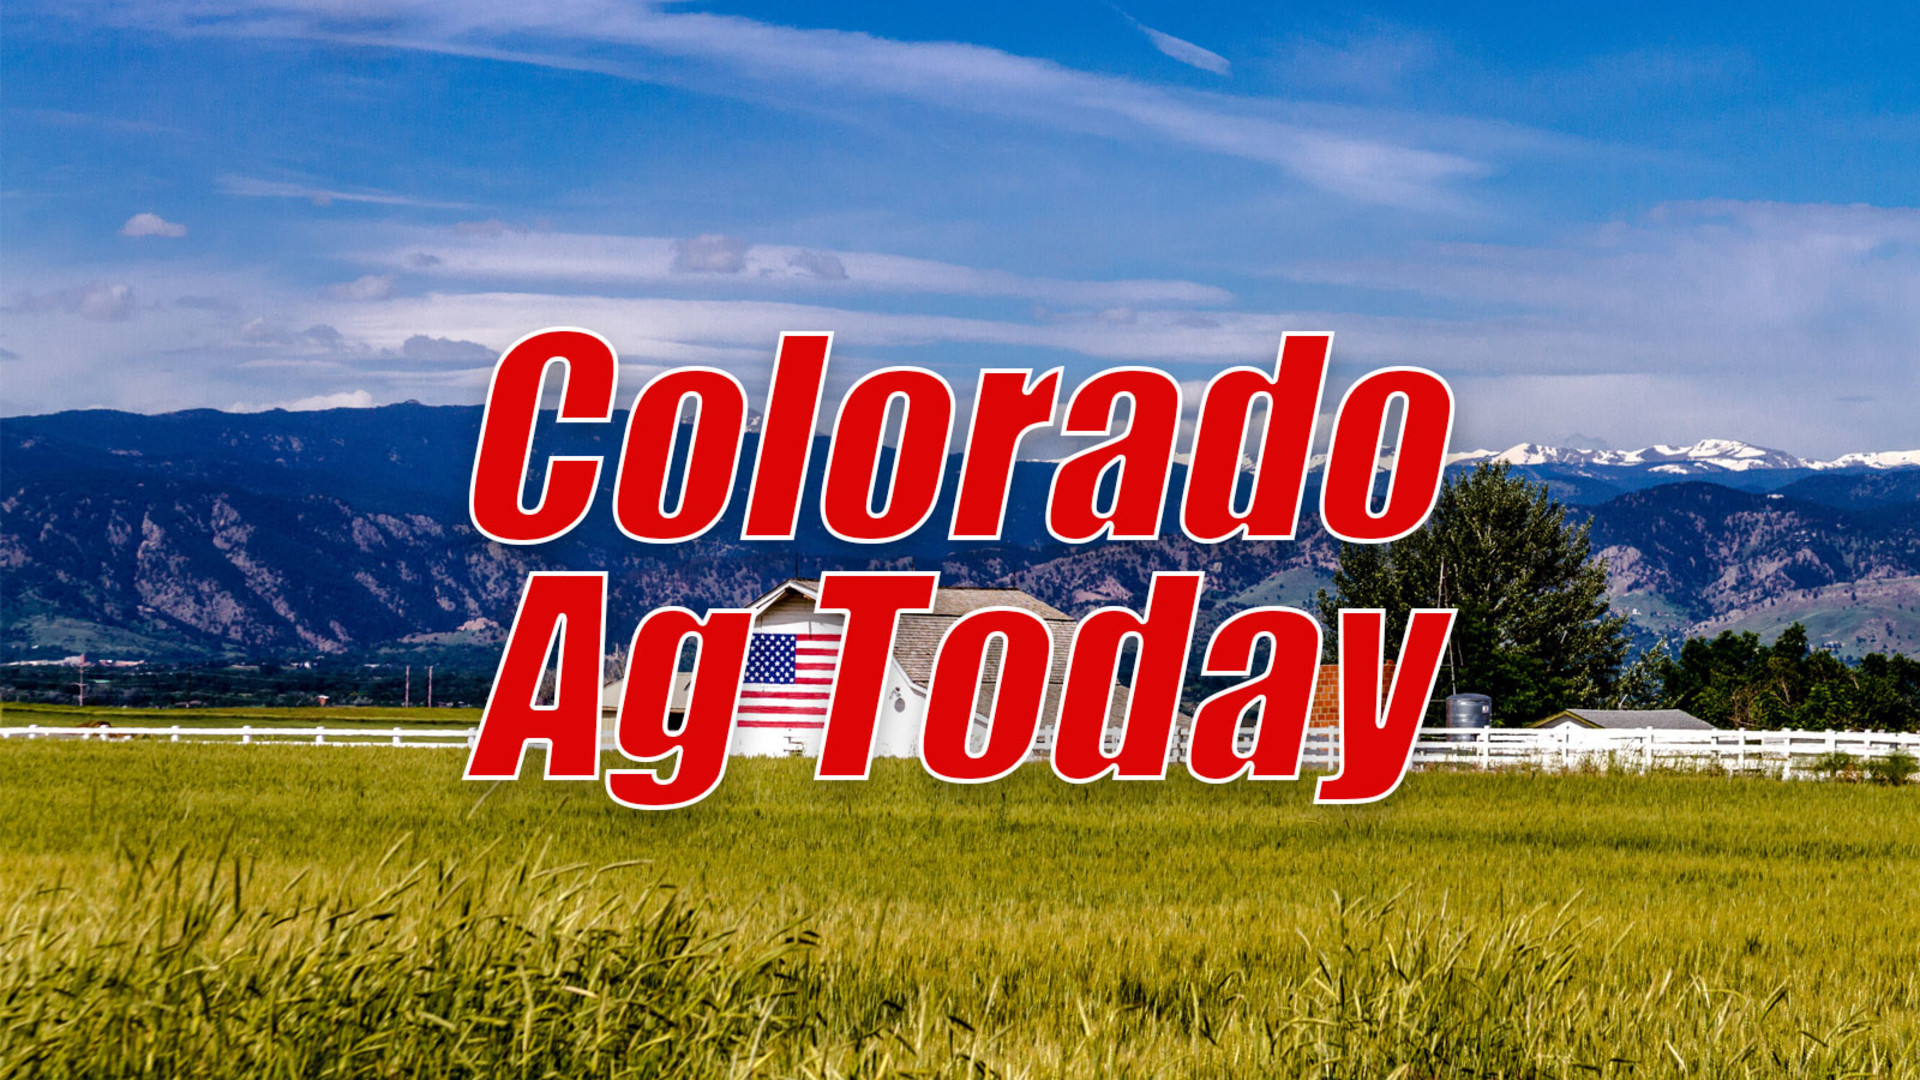 National Fruit and Veg Advisory names Colorado member